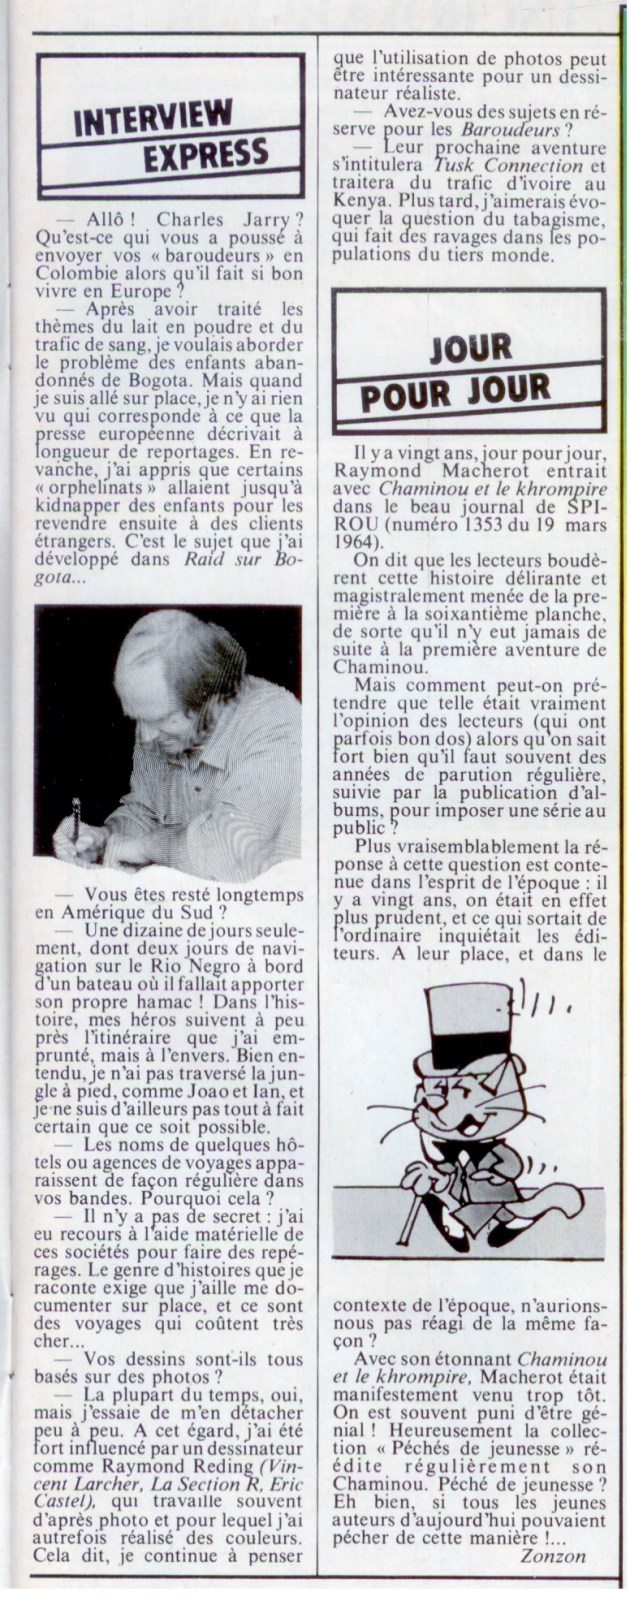 Les dessinateurs méconnus de Tintin, infos et interviews rares - Page 15 Interv42